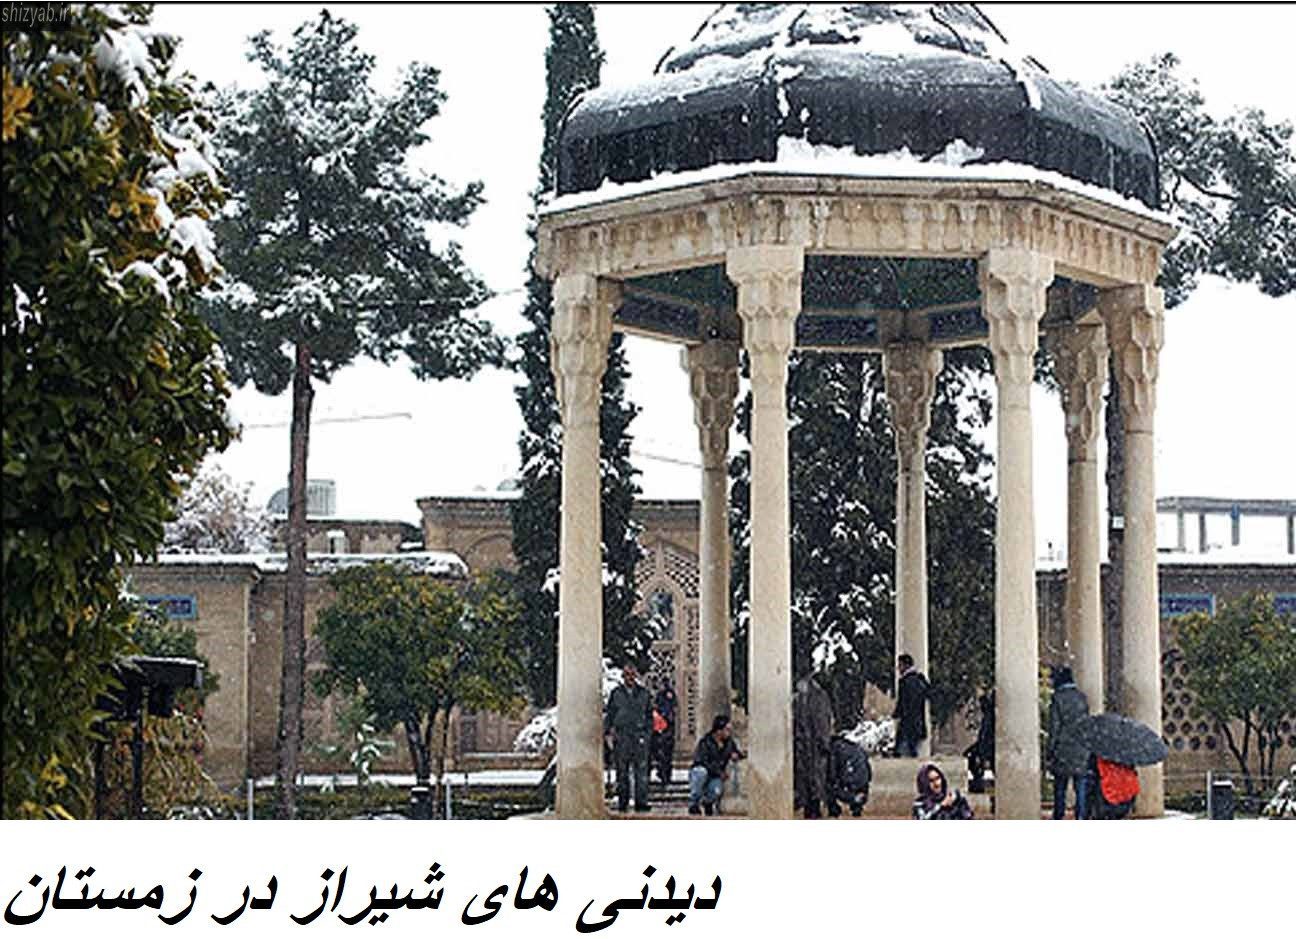 دیدنی های شیراز در زمستان